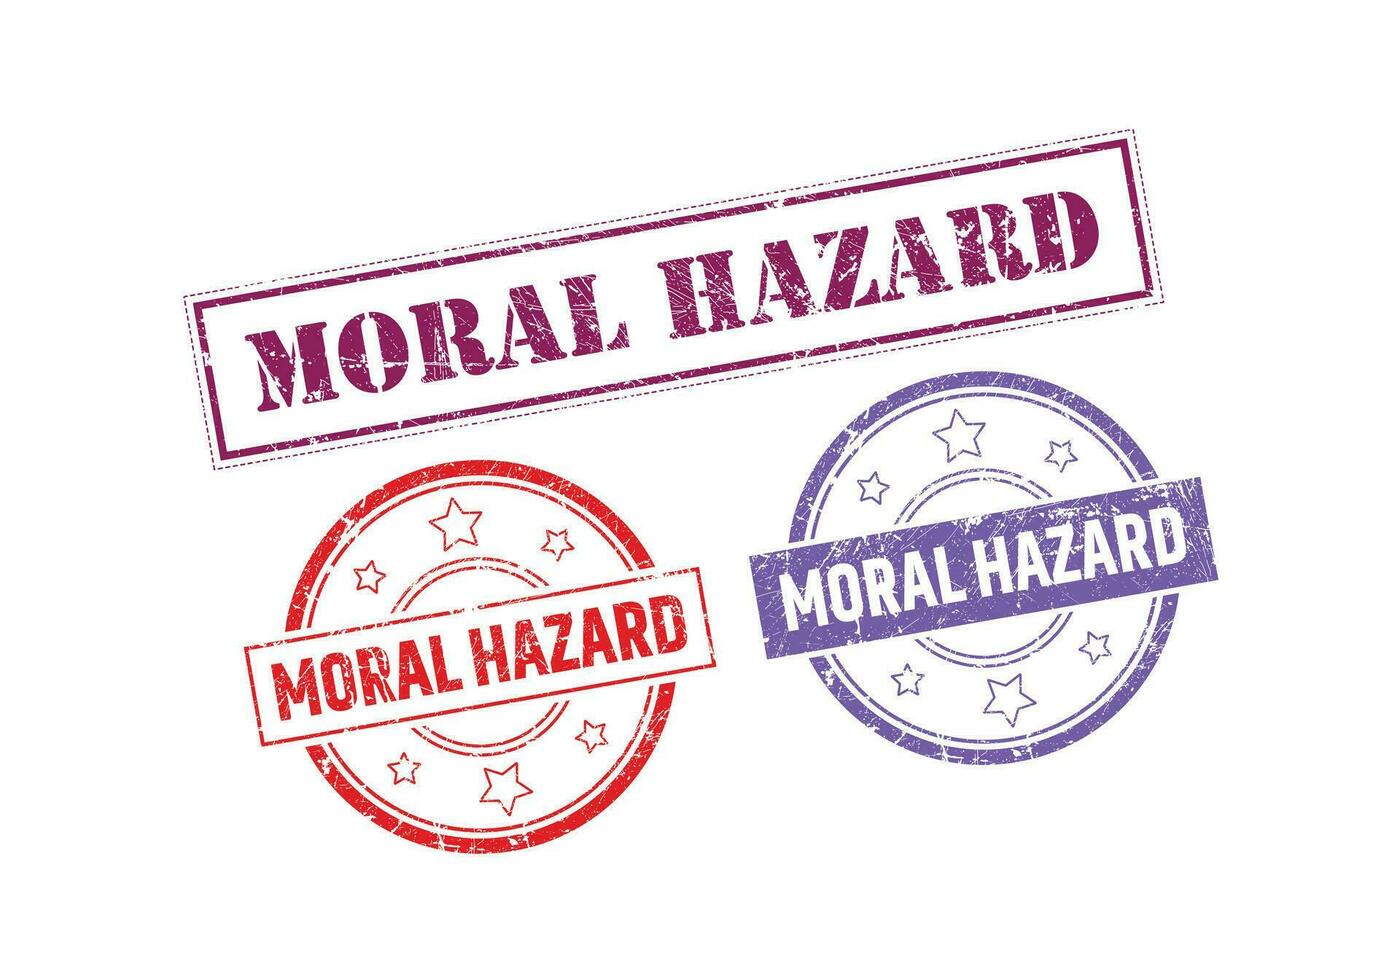 Moral Hazard Rubber sign or Stamp, Grunge rubber Stamp, Sale badge Vintage old texture vector